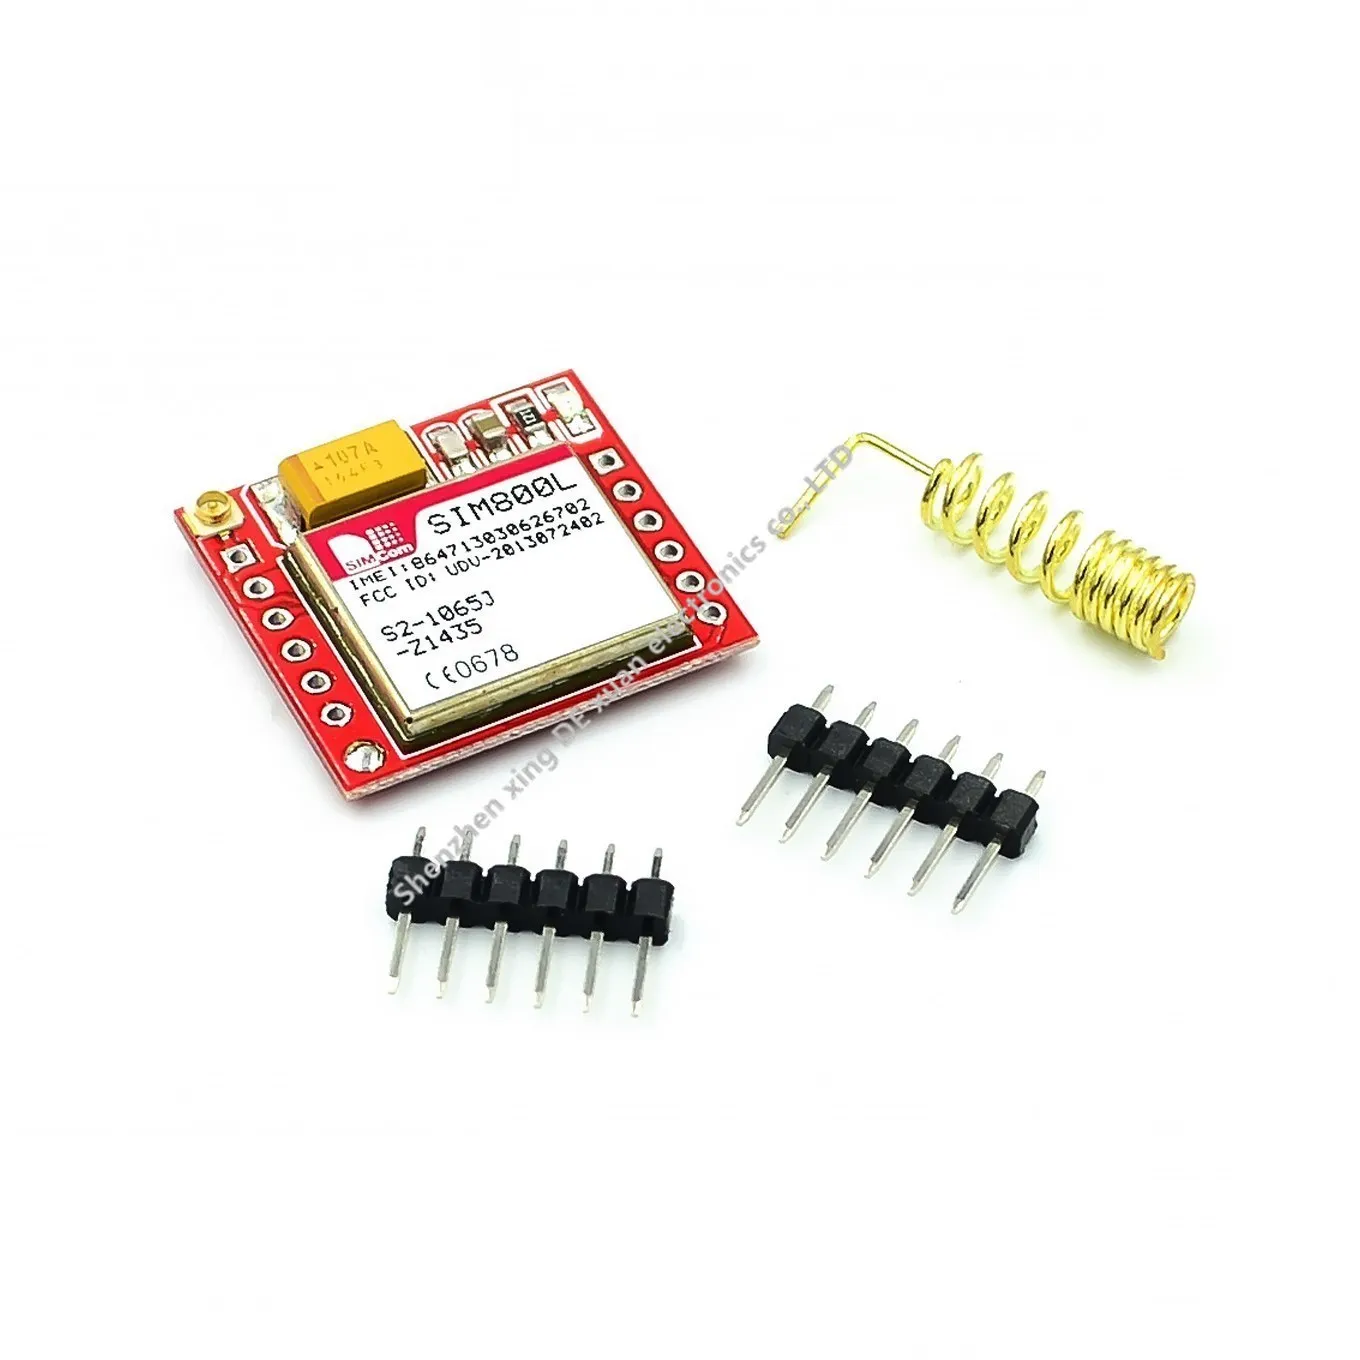 

100pcs gsm module Smallest SIM800L GPRS GSM Module MicroSIM Card Core BOard Quad-band TTL Serial Port For arduino